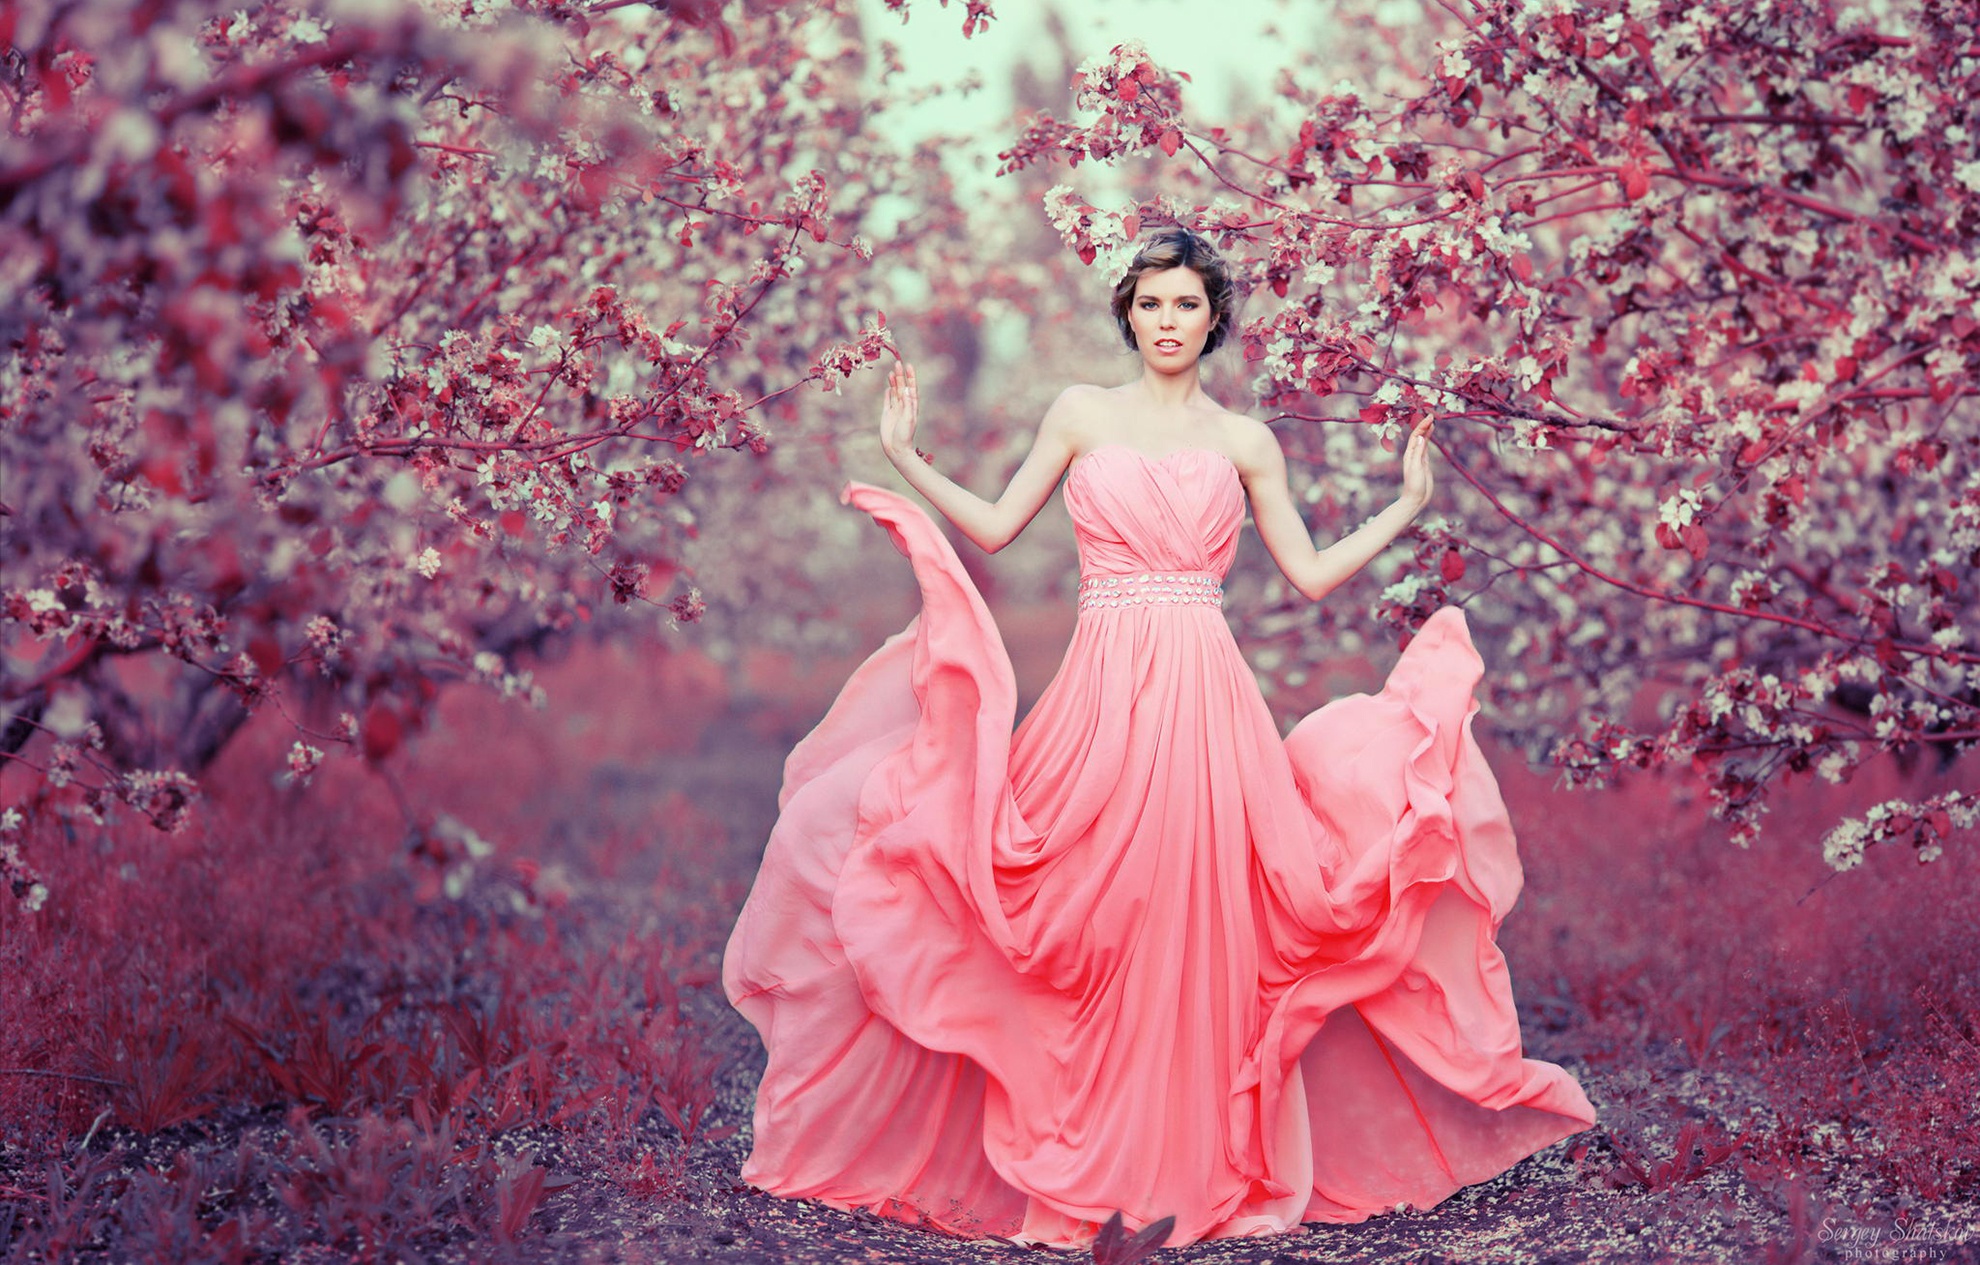 Девочка где то розовая. Женщина в длинном платье. Фотосессия в платье. Красивое розовое платье. Девушка в розовом платье.